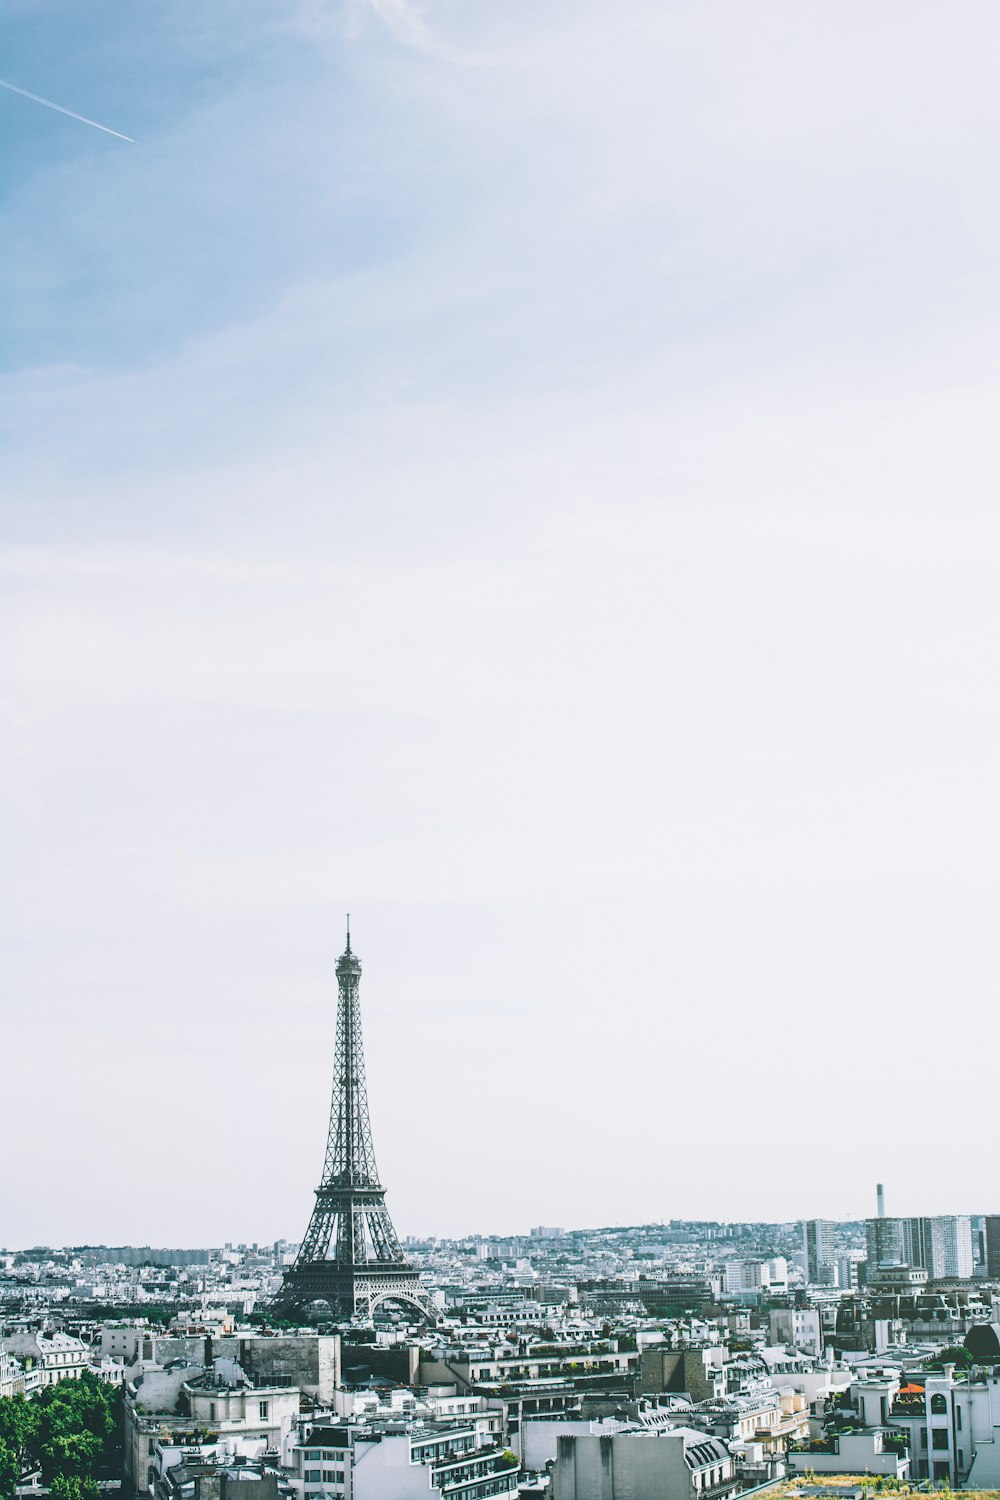 Fotografía de la Torre Eiffel de París